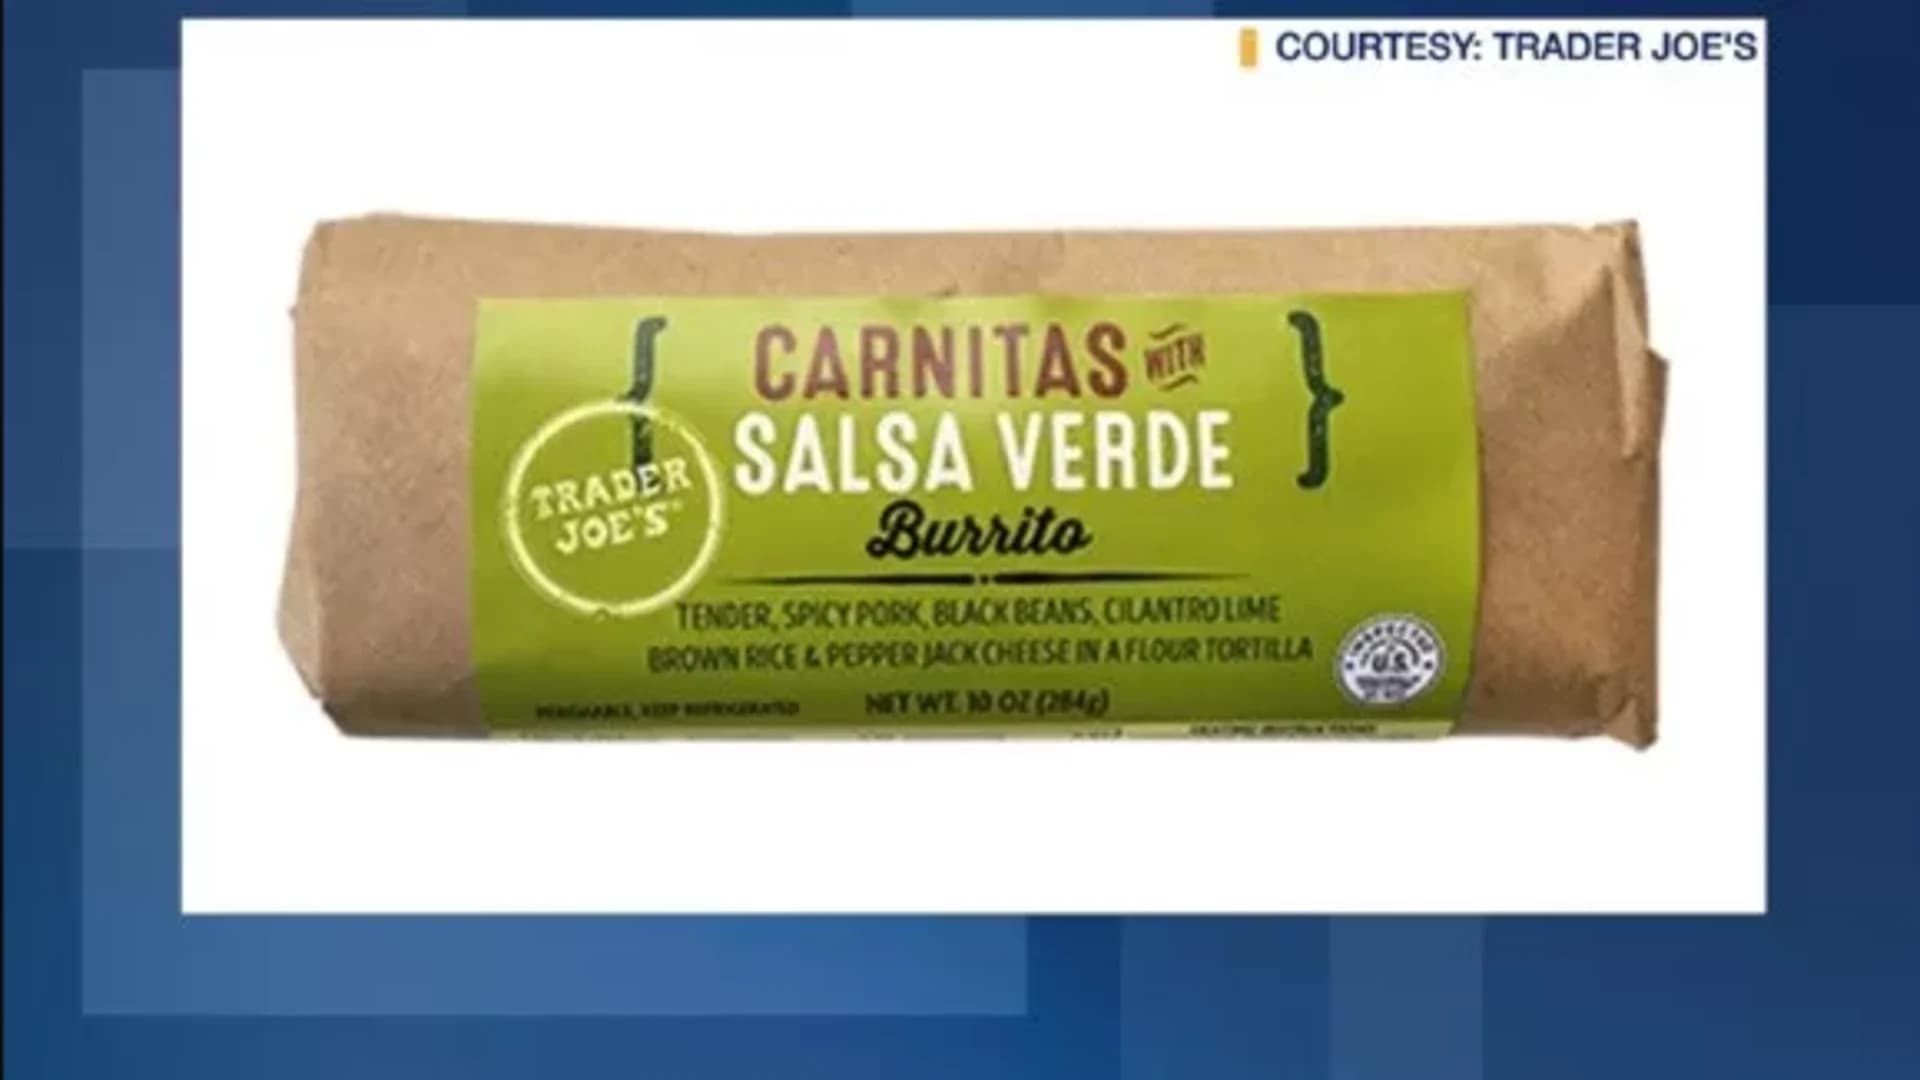 Trader Joe's recalls burrito over possible salmonella concerns